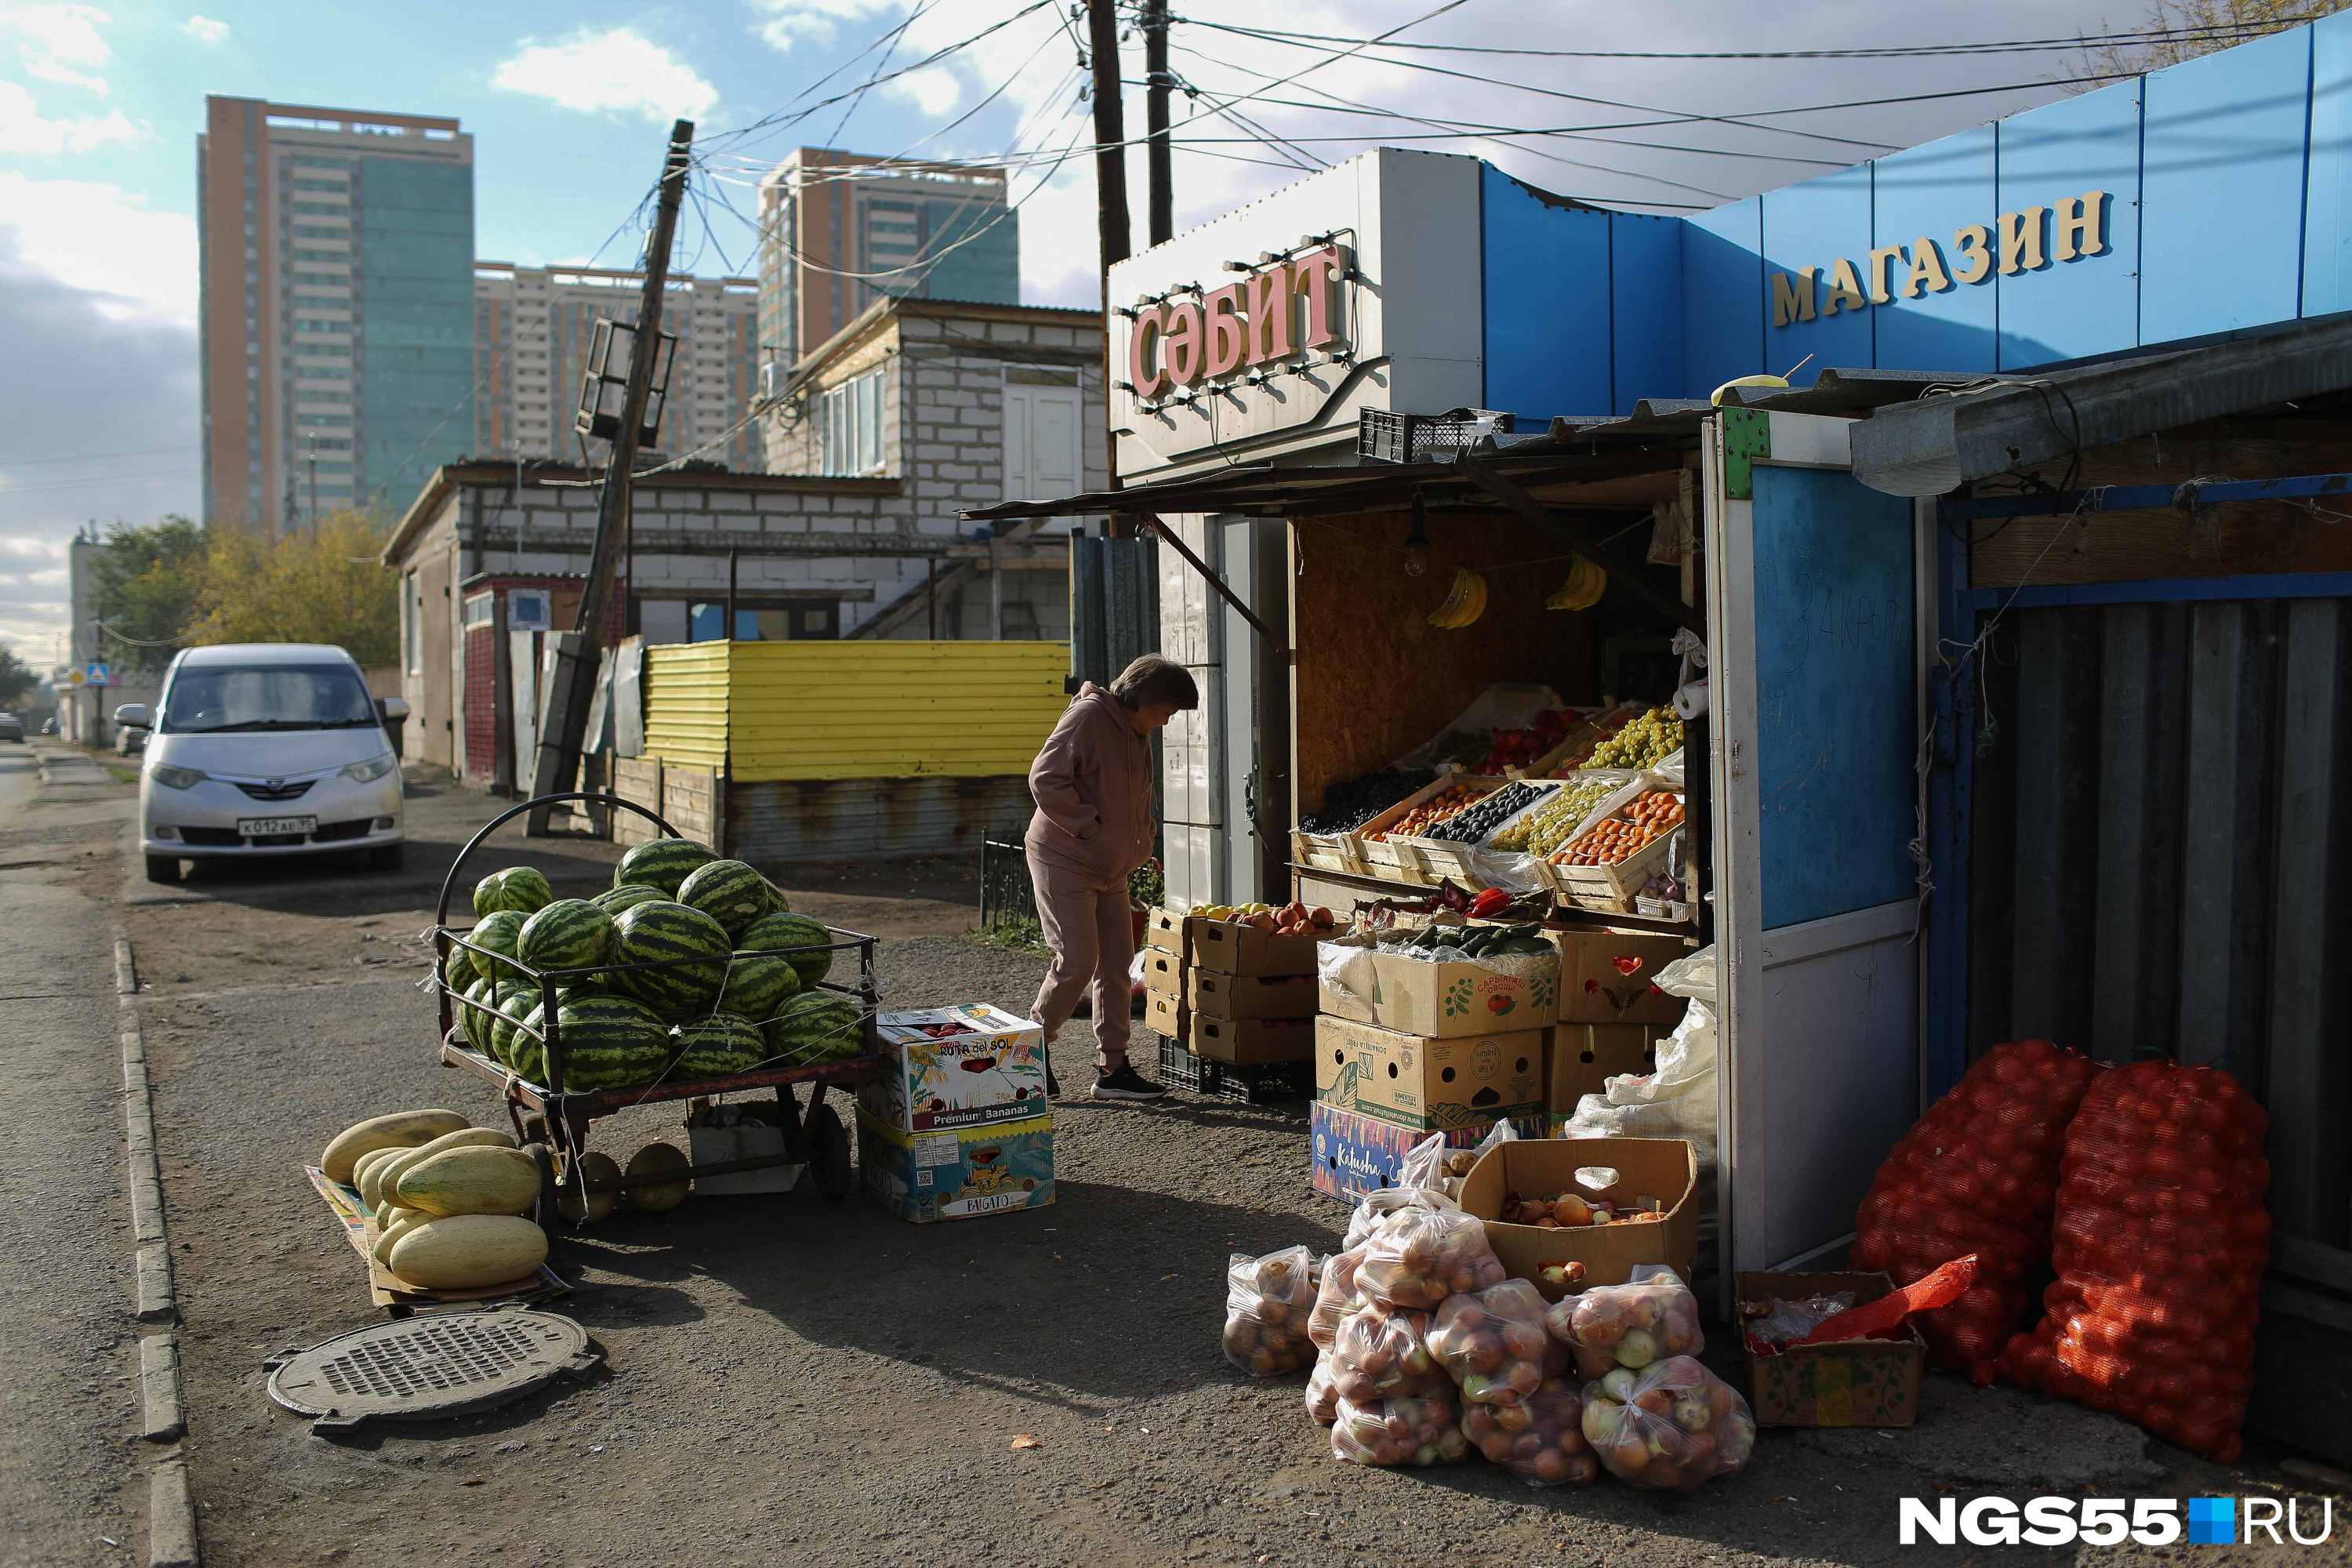 Стройные ряды киосков и рынки в Астане навевают воспоминания о 90-х